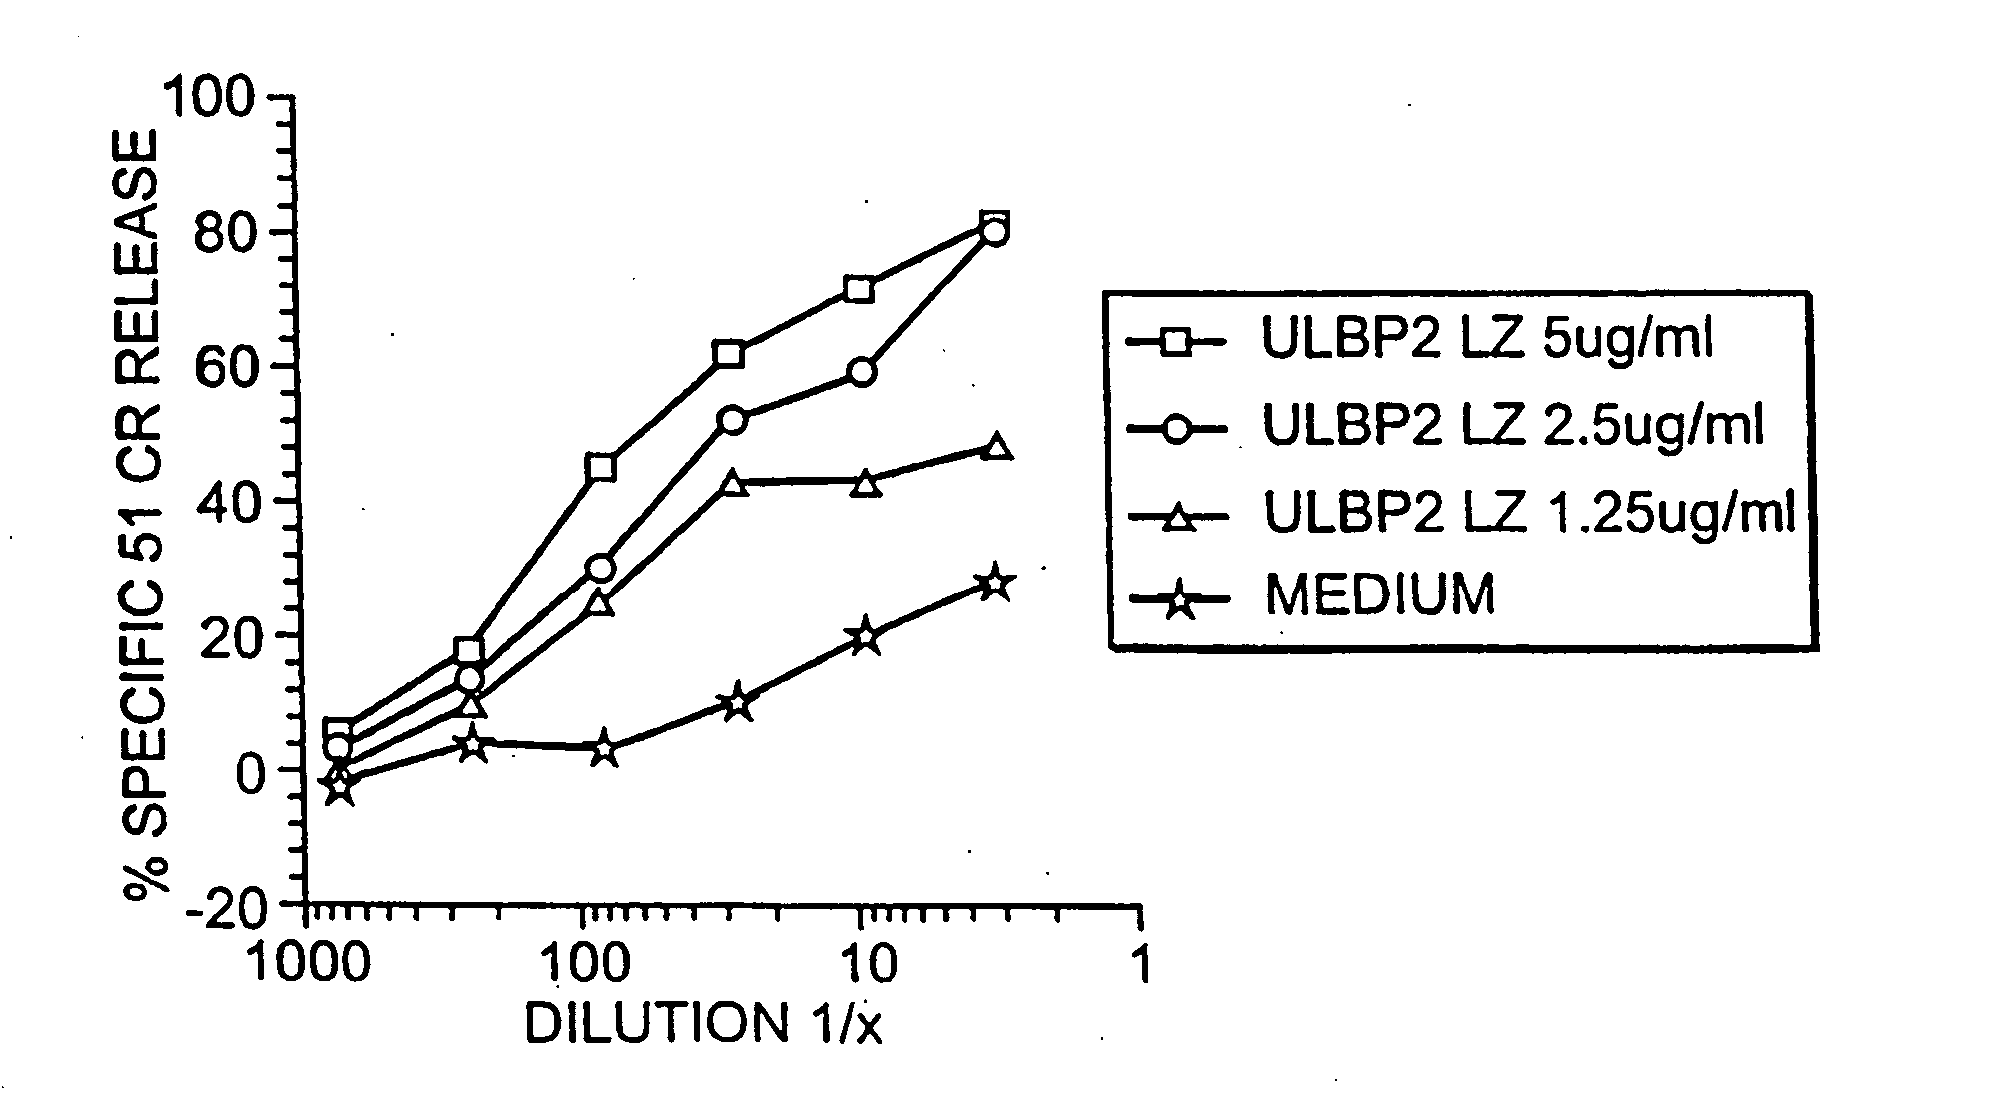 ULBP antibodies